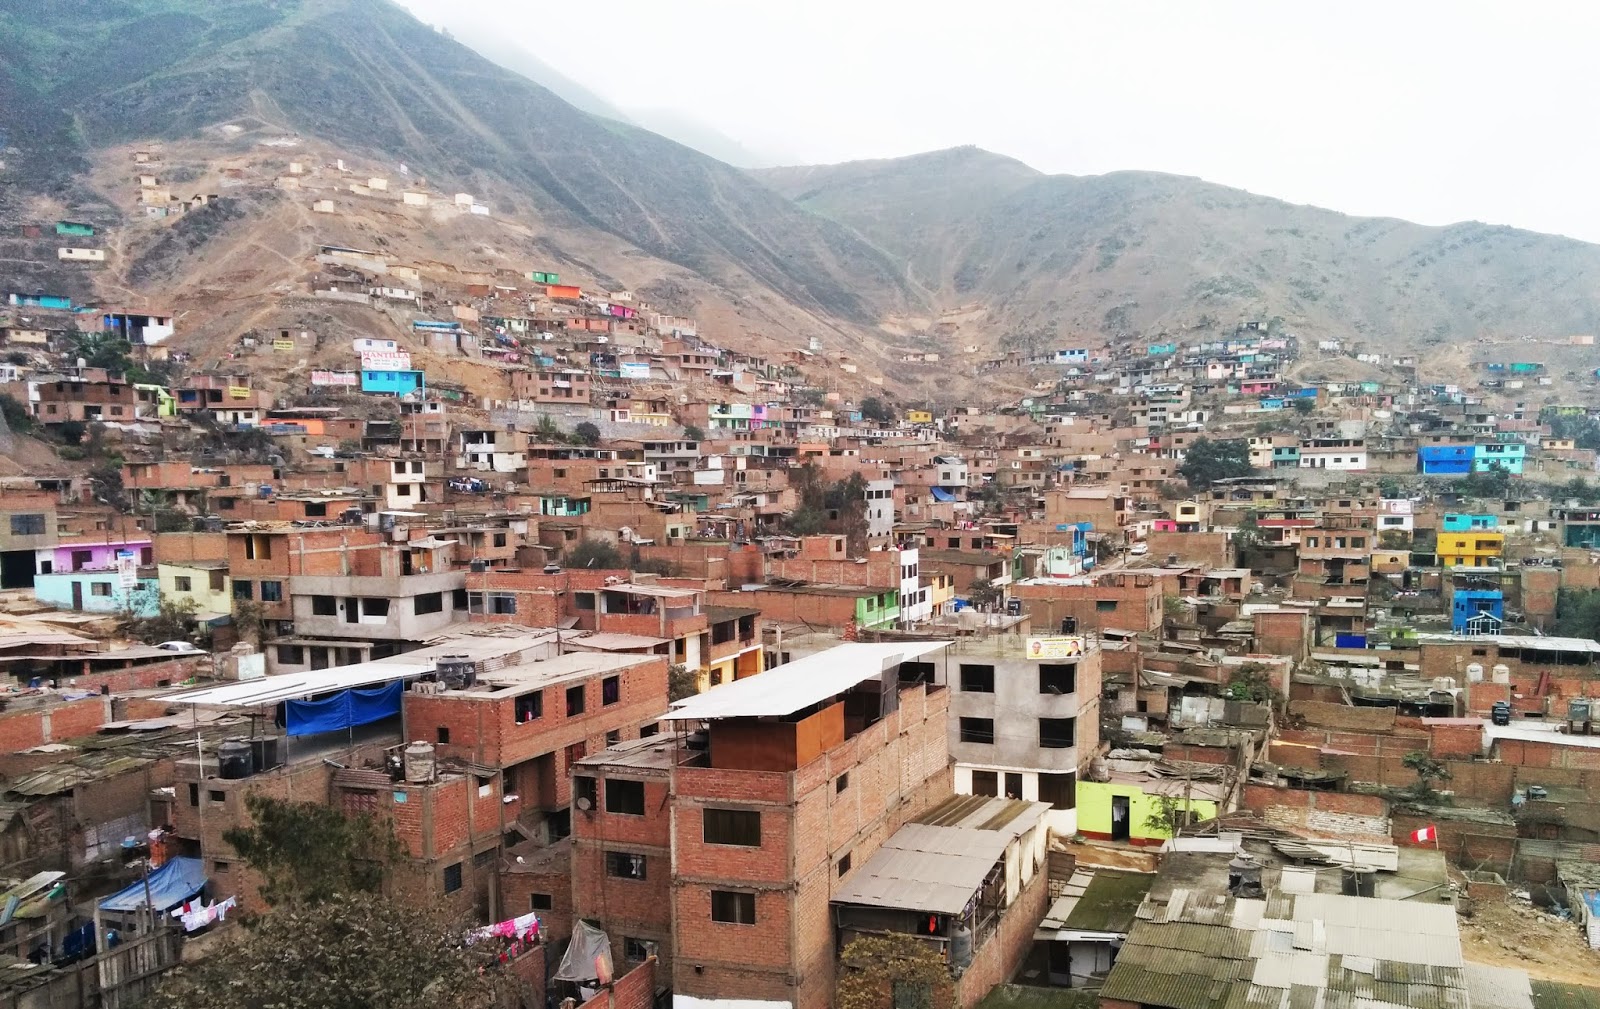 80% de las viviendas en el Perú son autoconstruidas y altamente vulnerables ante desastres naturales.